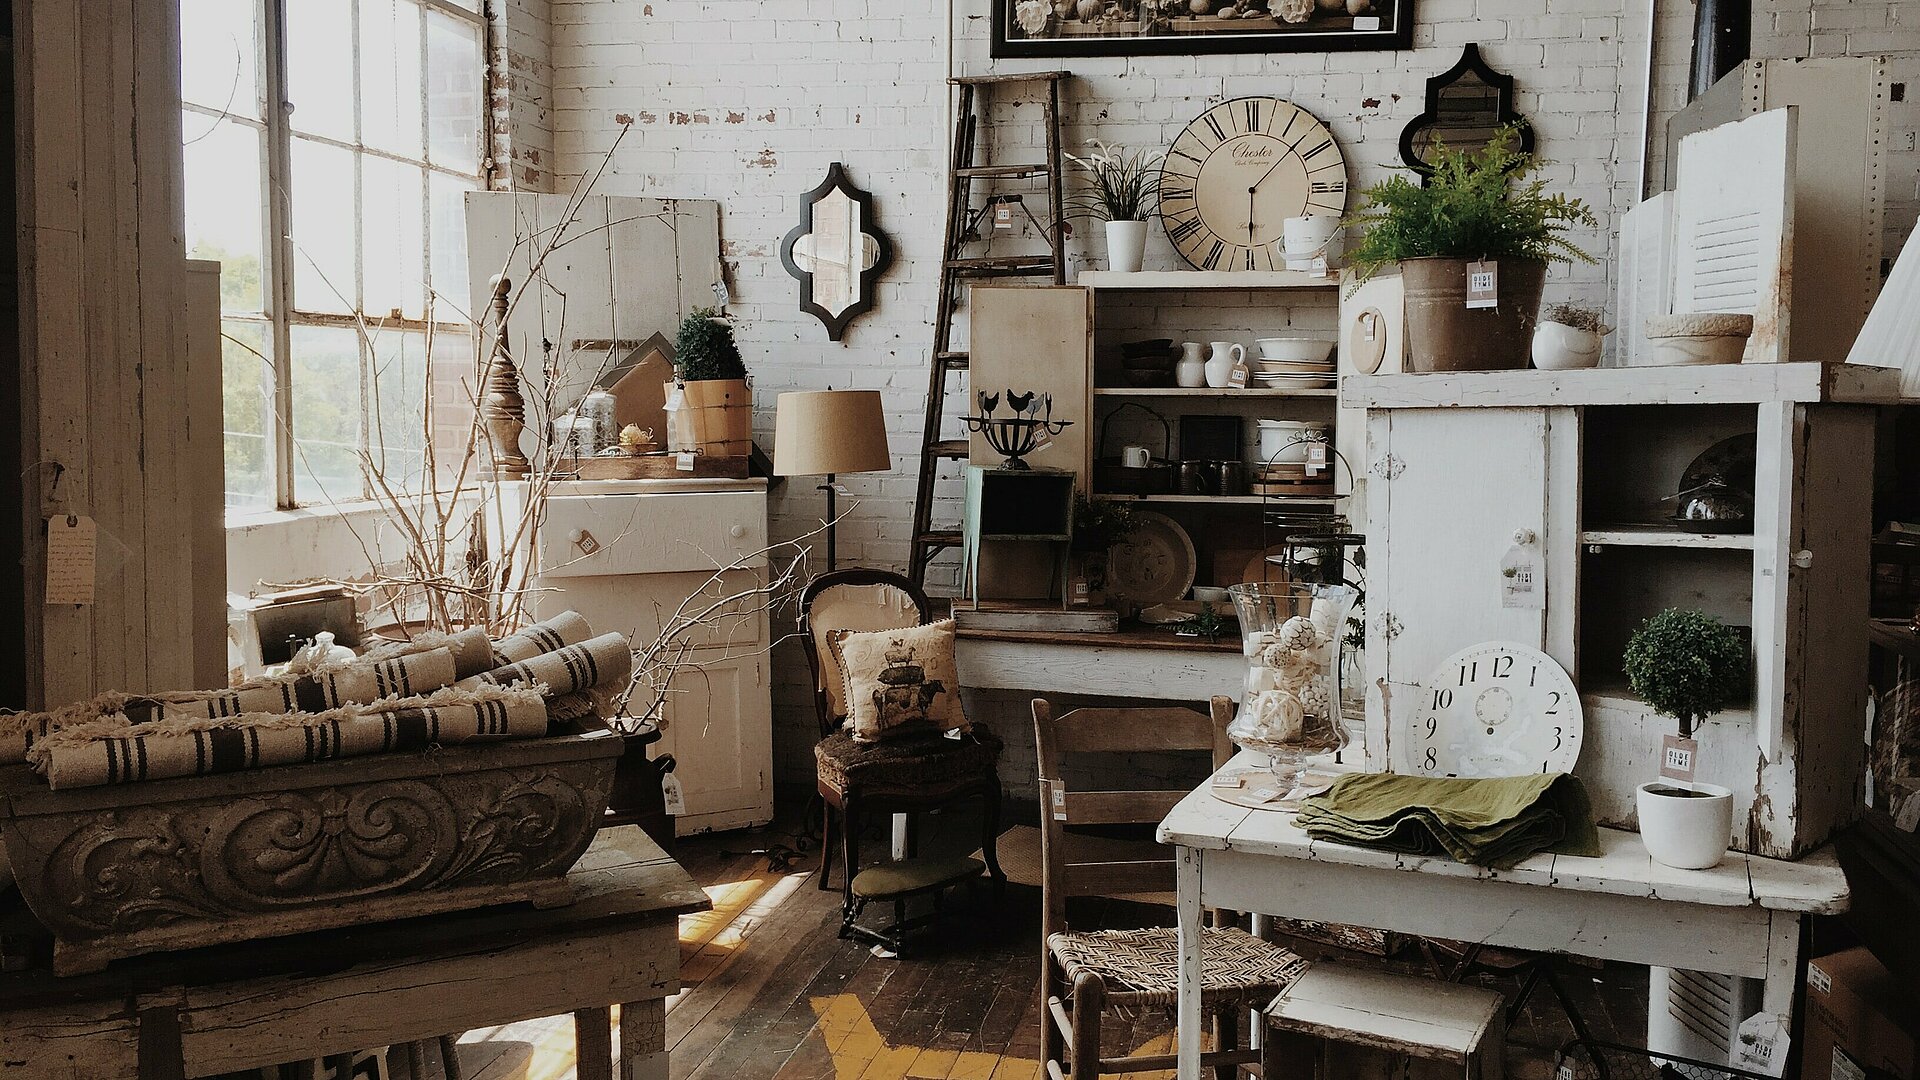 Wohnraum mit Möbeln im Vintage Look